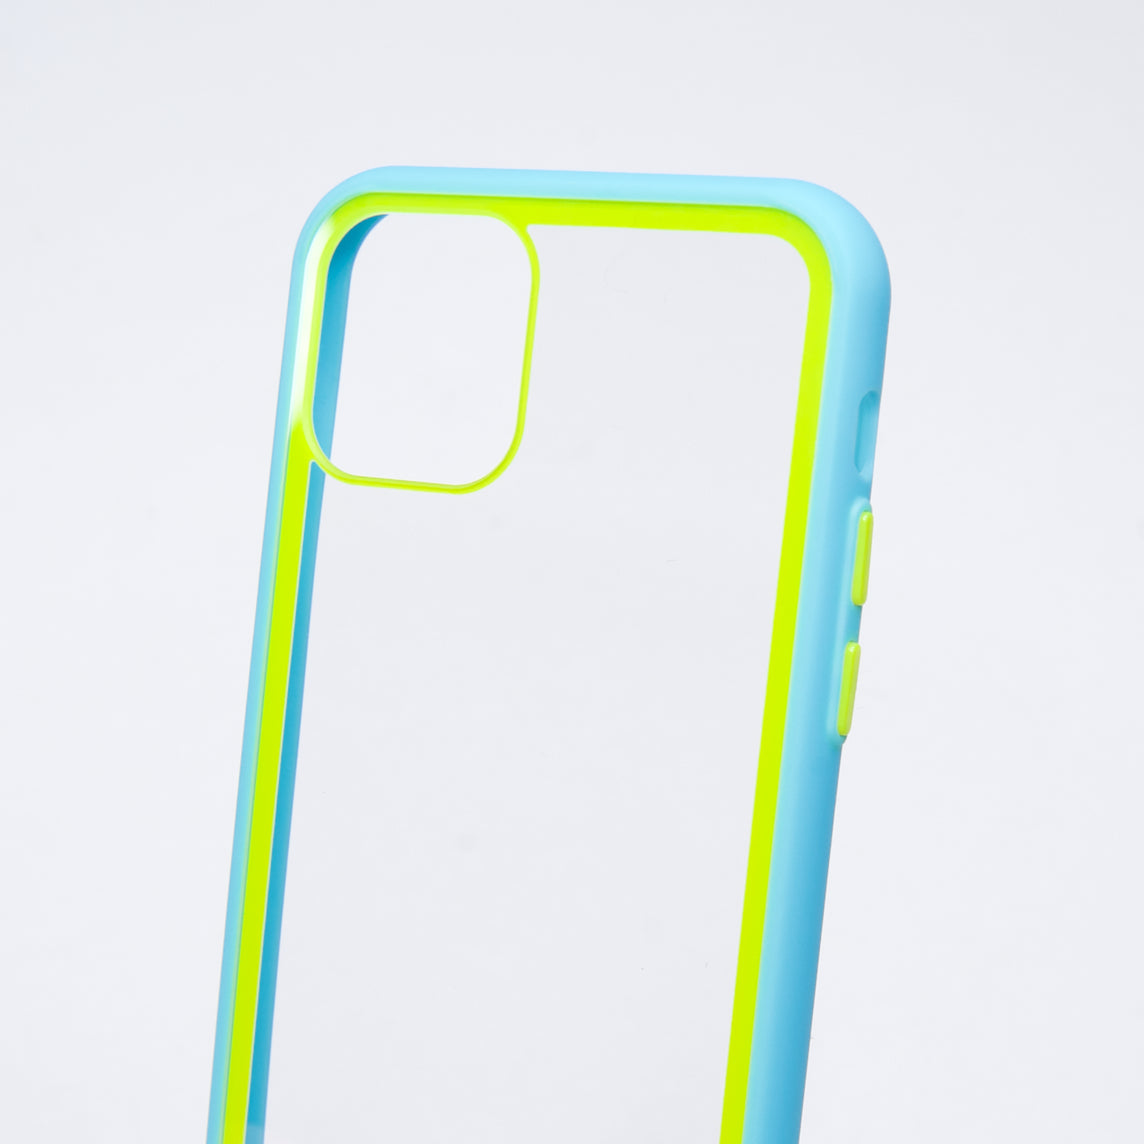 Estuche el rey iphone 11 pro con marco color transparente / celeste